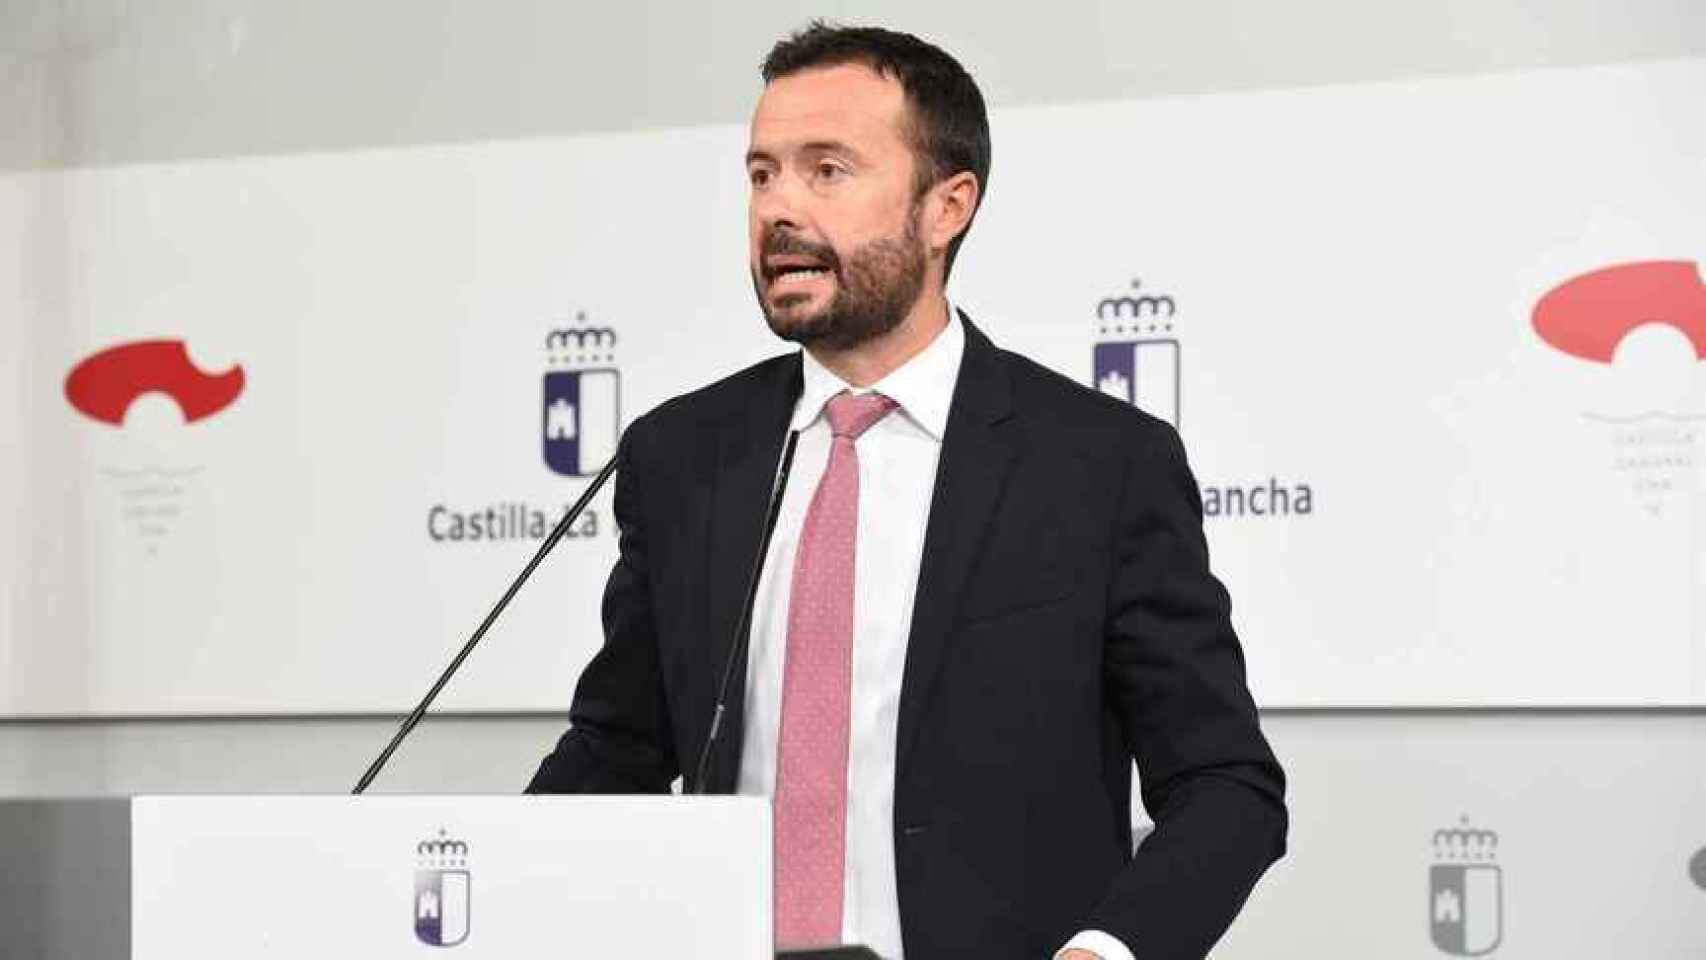 José Luis Escudero, consejero de Desarrollo Sostenible de Castilla-La Mancha